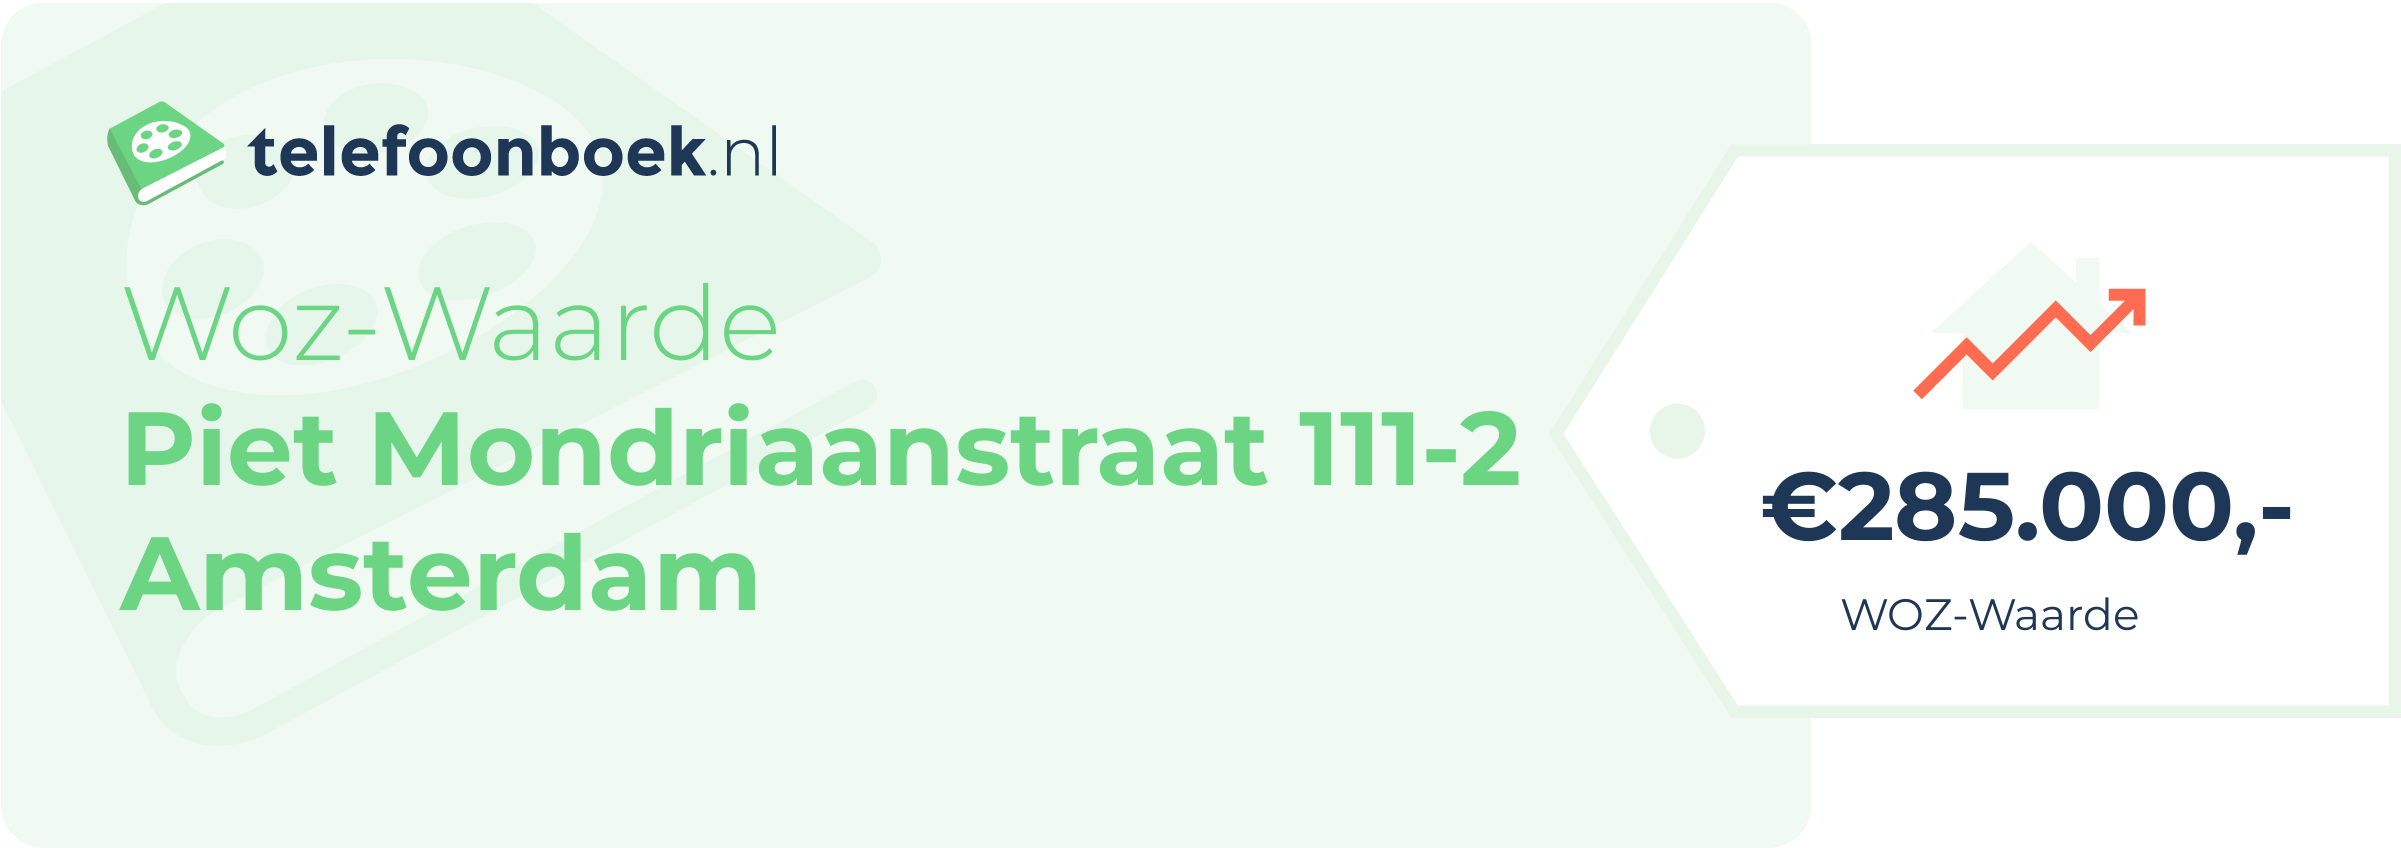 WOZ-waarde Piet Mondriaanstraat 111-2 Amsterdam